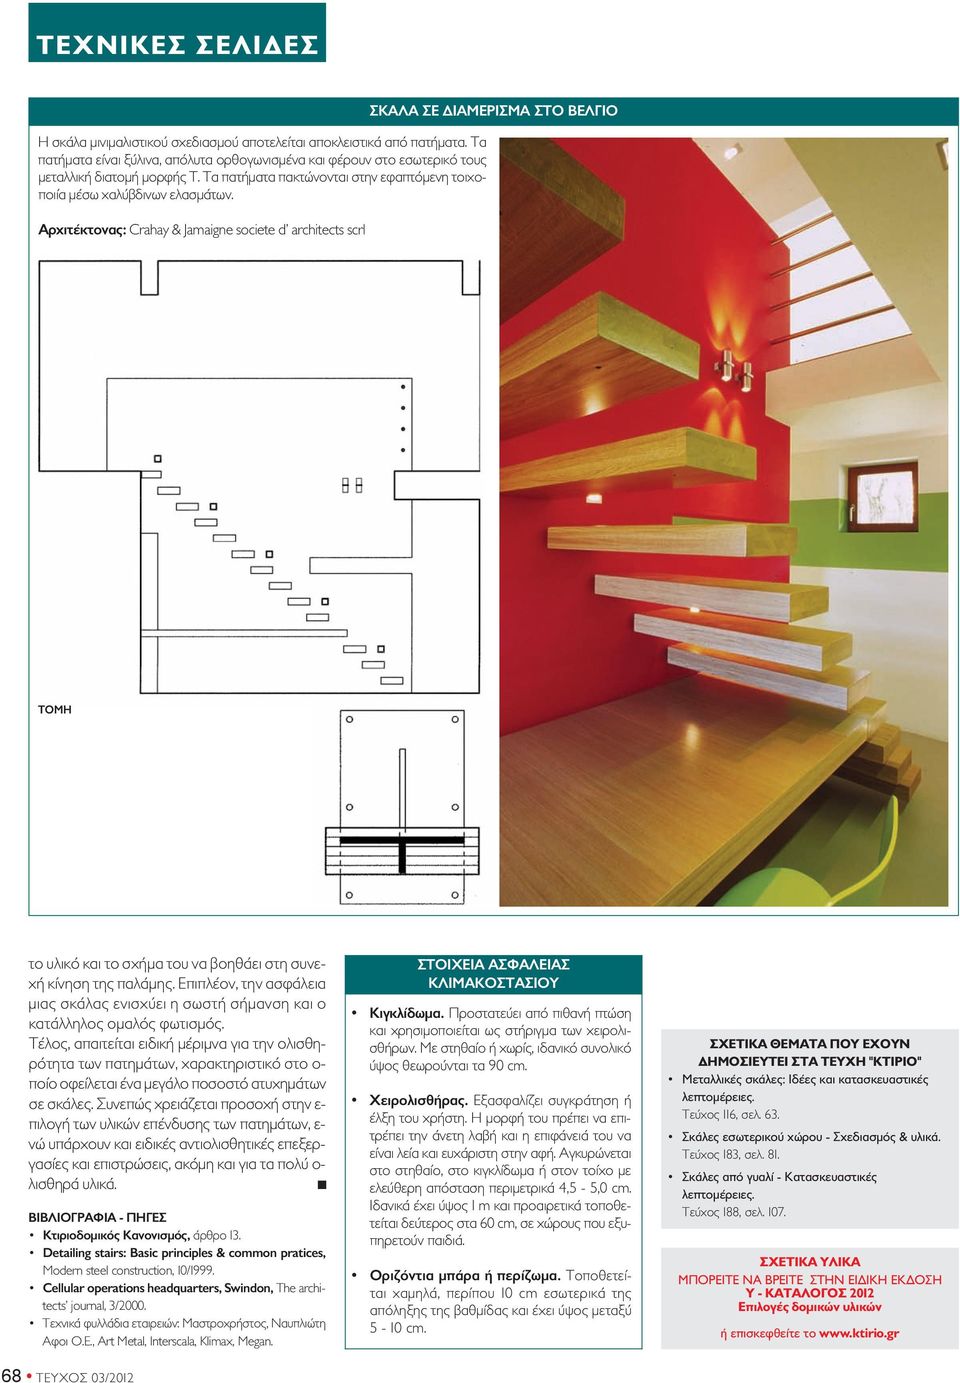 αρχιτέκτονας: Crahay & Jamaigne societe d architects scrl σκαλα σε διαμερισμα στο ΒεΛΓιο τομη το υλικό και το σχήμα του να βοηθάει στη συνεχή κίνηση της παλάμης.